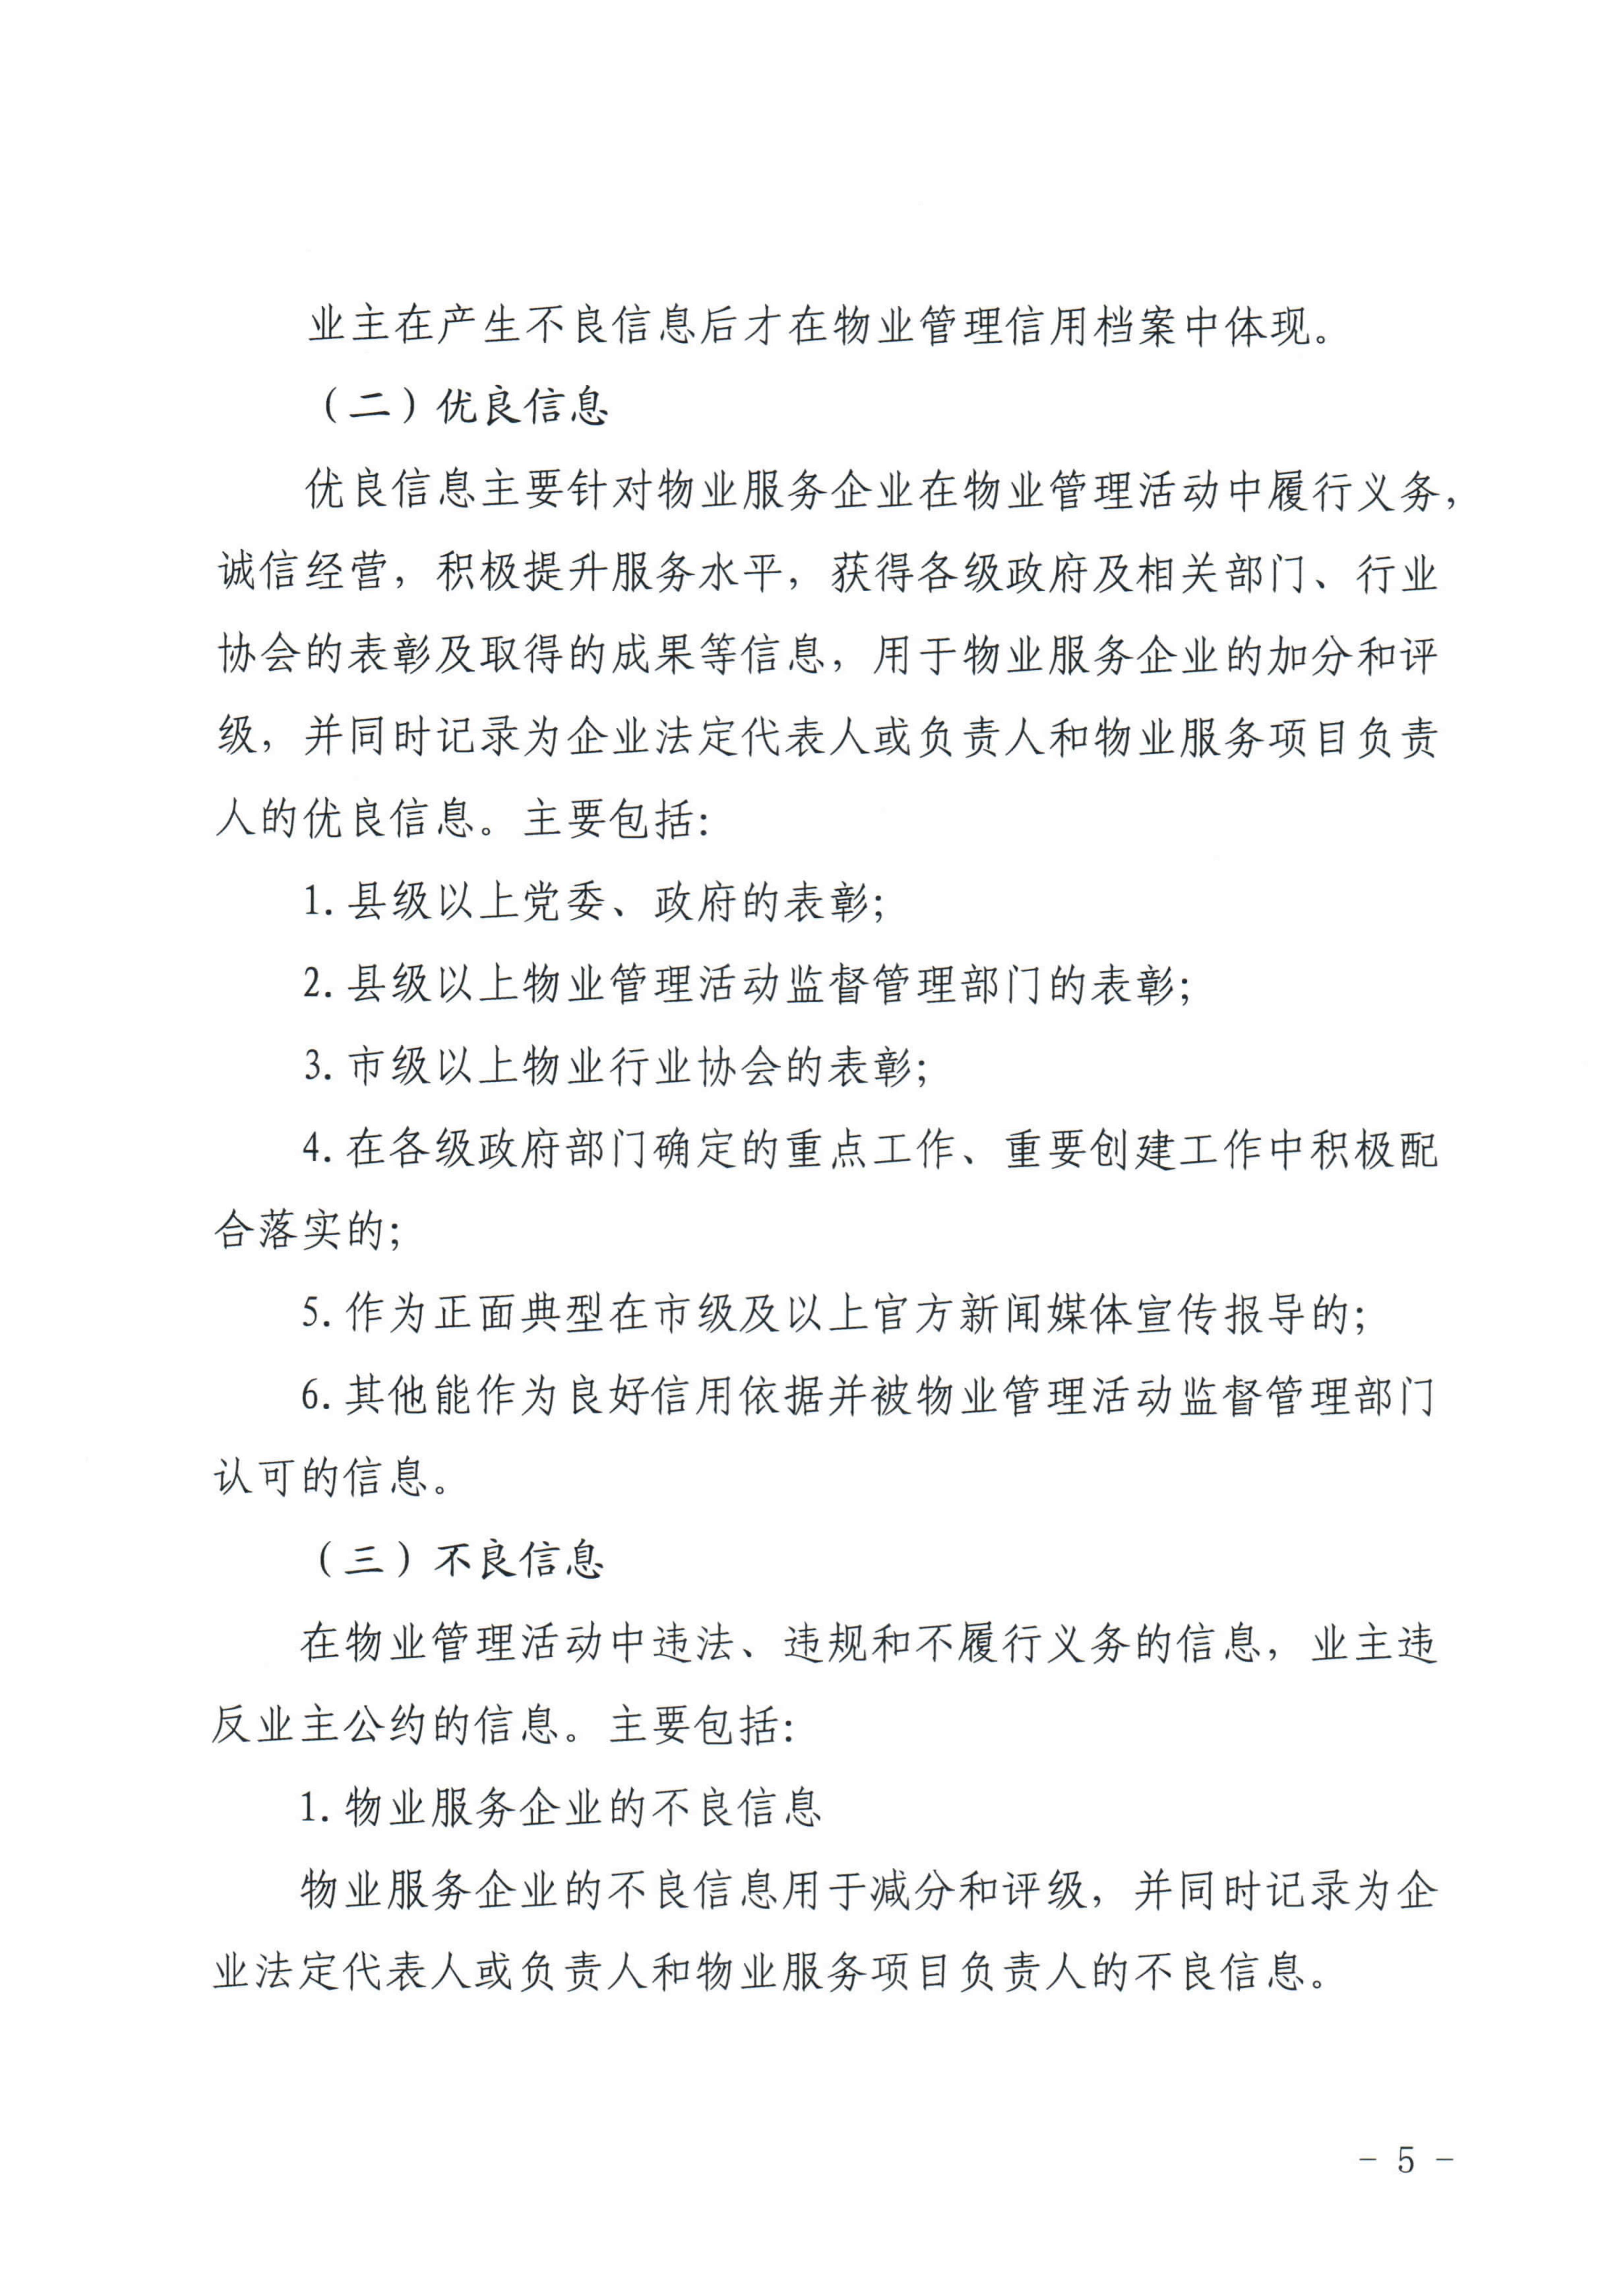 惠州市物业管理协会关于印发《惠州市物业管理活动信用档案管理办法》的通知_5.jpg